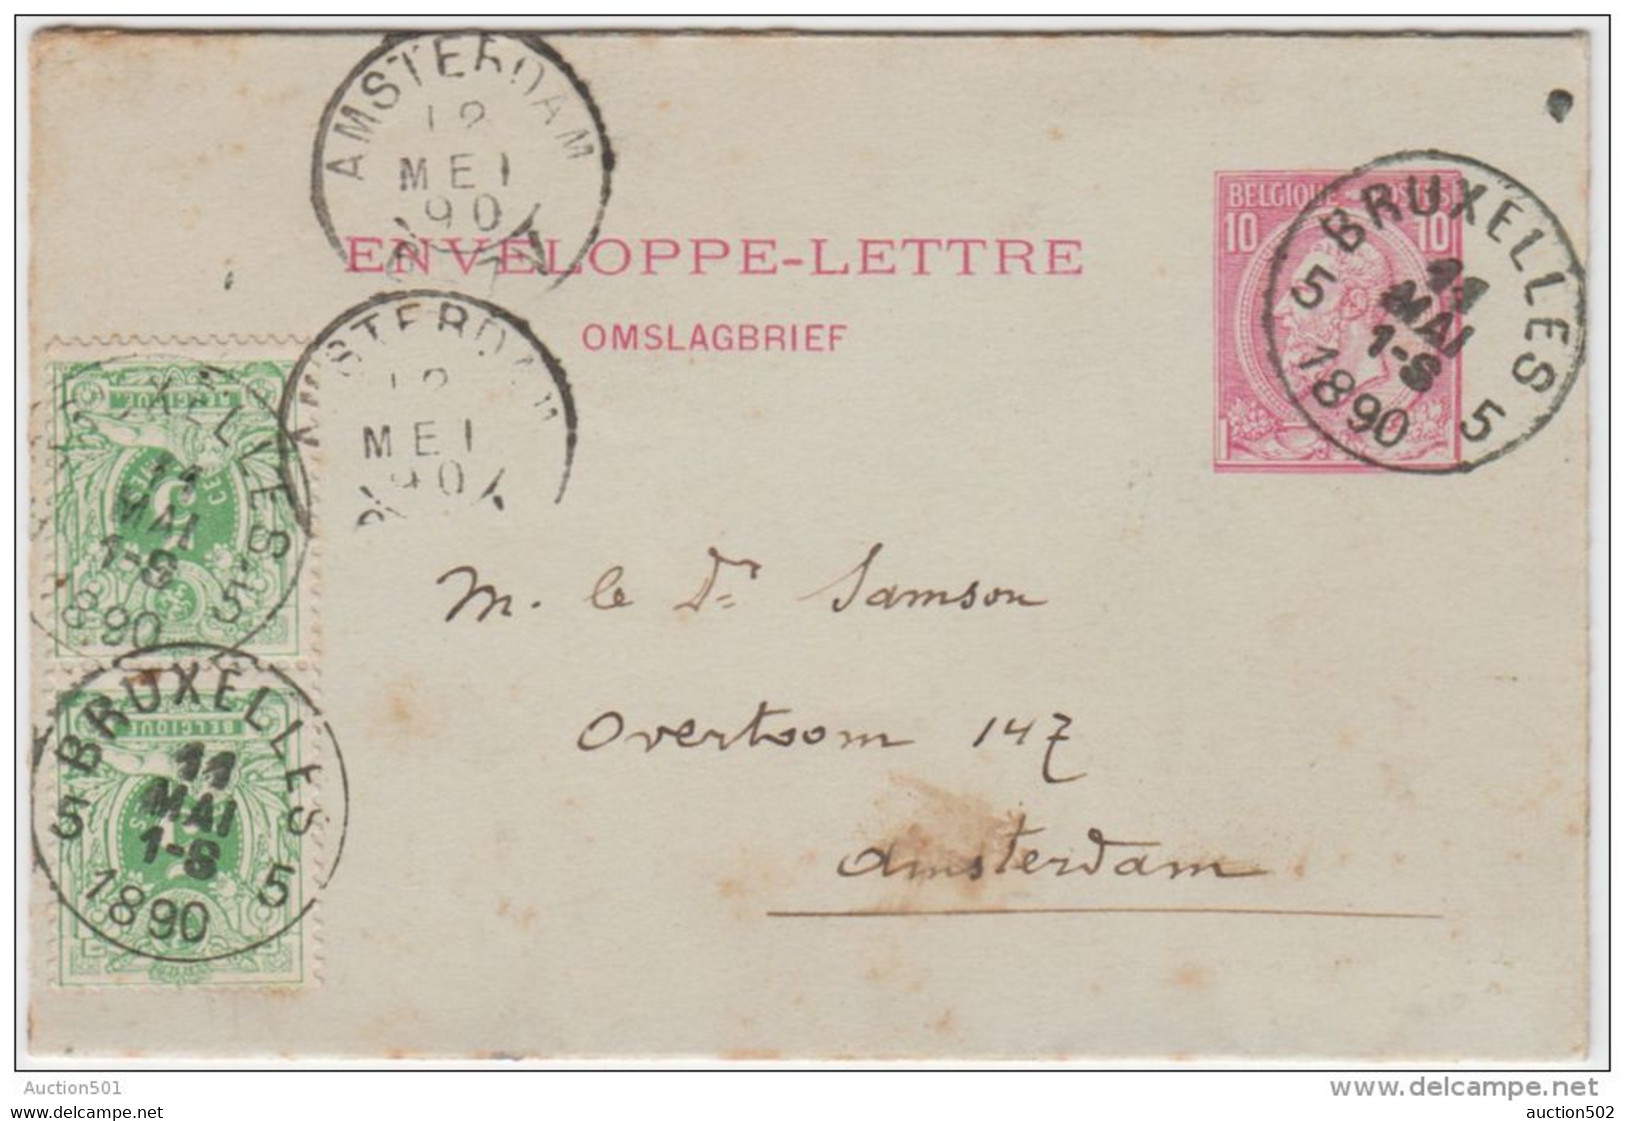 01933a Bruxelles 5 1890 Env. Lettre 1 TP 45 (2) V. Amsterdam C. Arrivée - Letter Covers